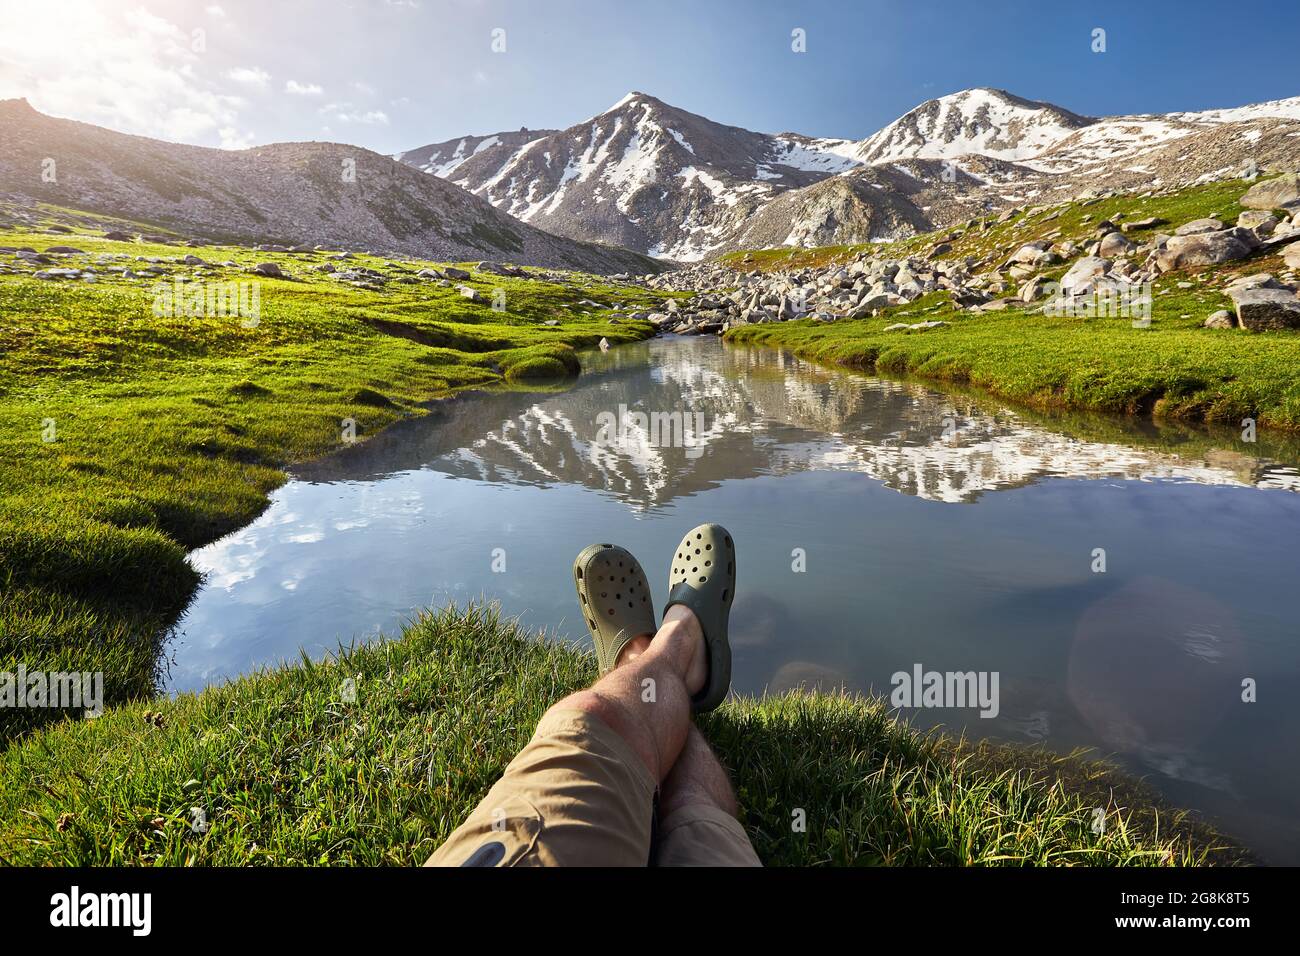 Le gambe dell'uomo escursionista in scarpe verdi riposano vicino al lago di montagna limpido con il riflesso della cima con il cappuccio di neve Foto Stock